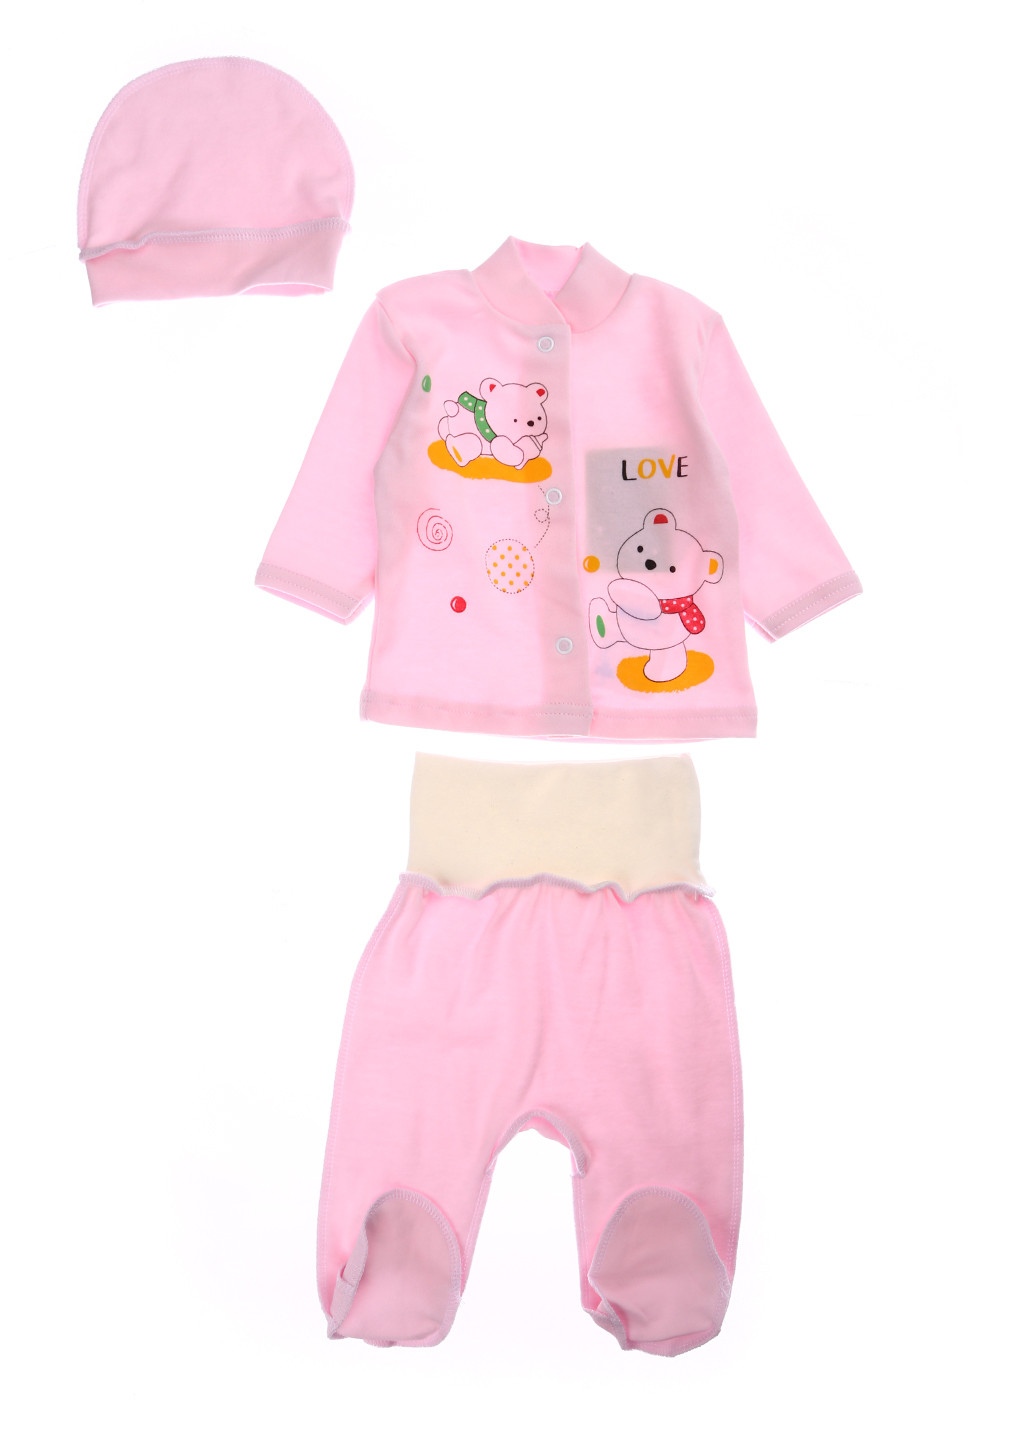 Розовый демисезонный комплект (кофта, ползунки, шапка) Baby Art